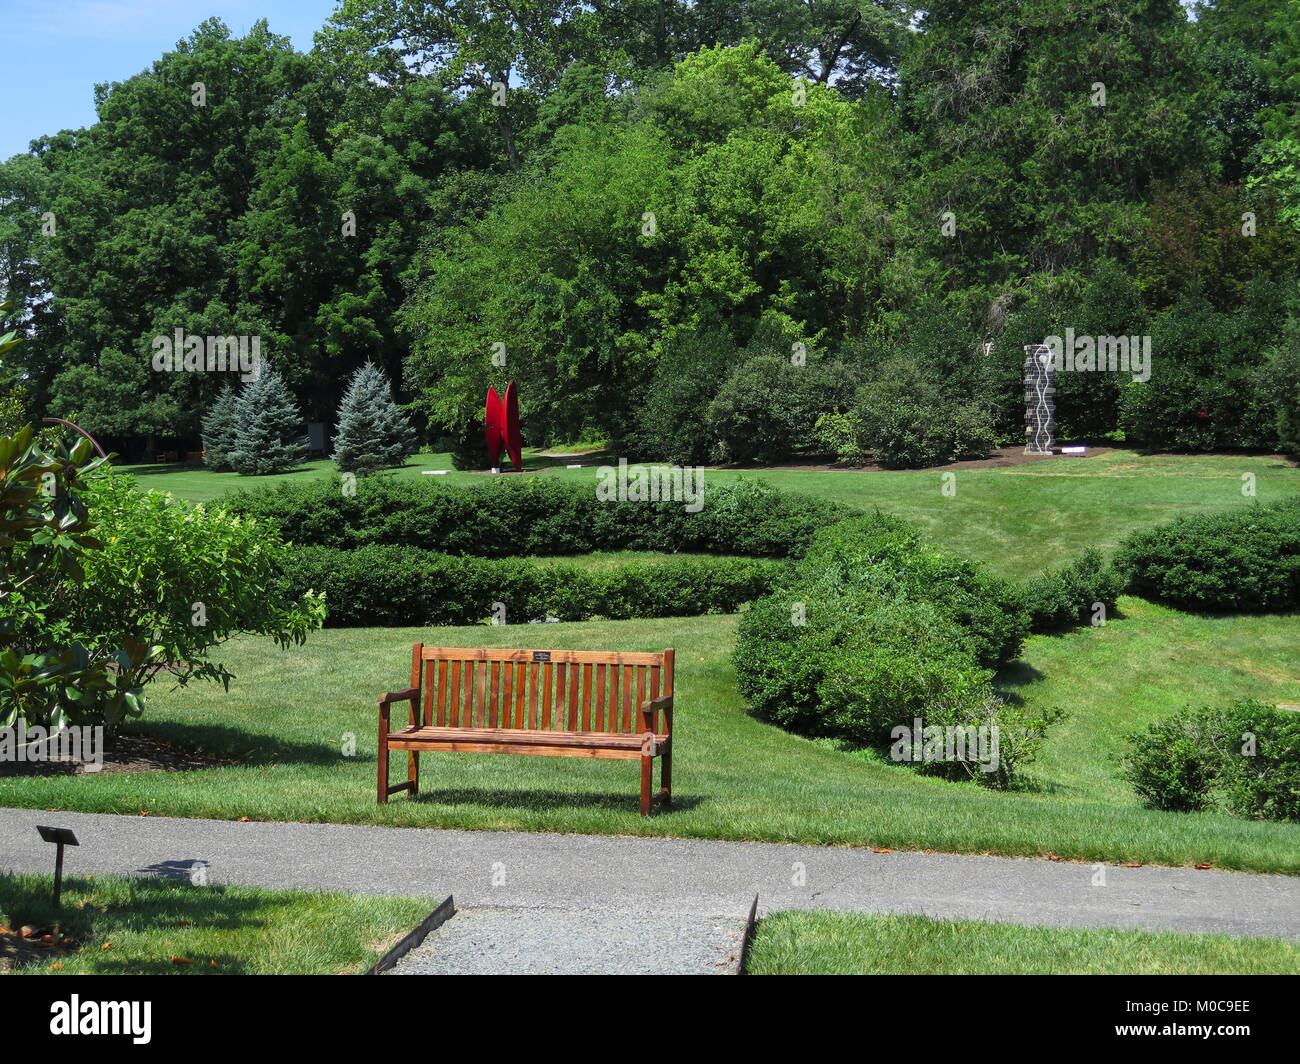 Delaware Art Museum, Wilmington, Delaware, art, sculpture, park. sculpture garden, illustrative art, Stock Photo